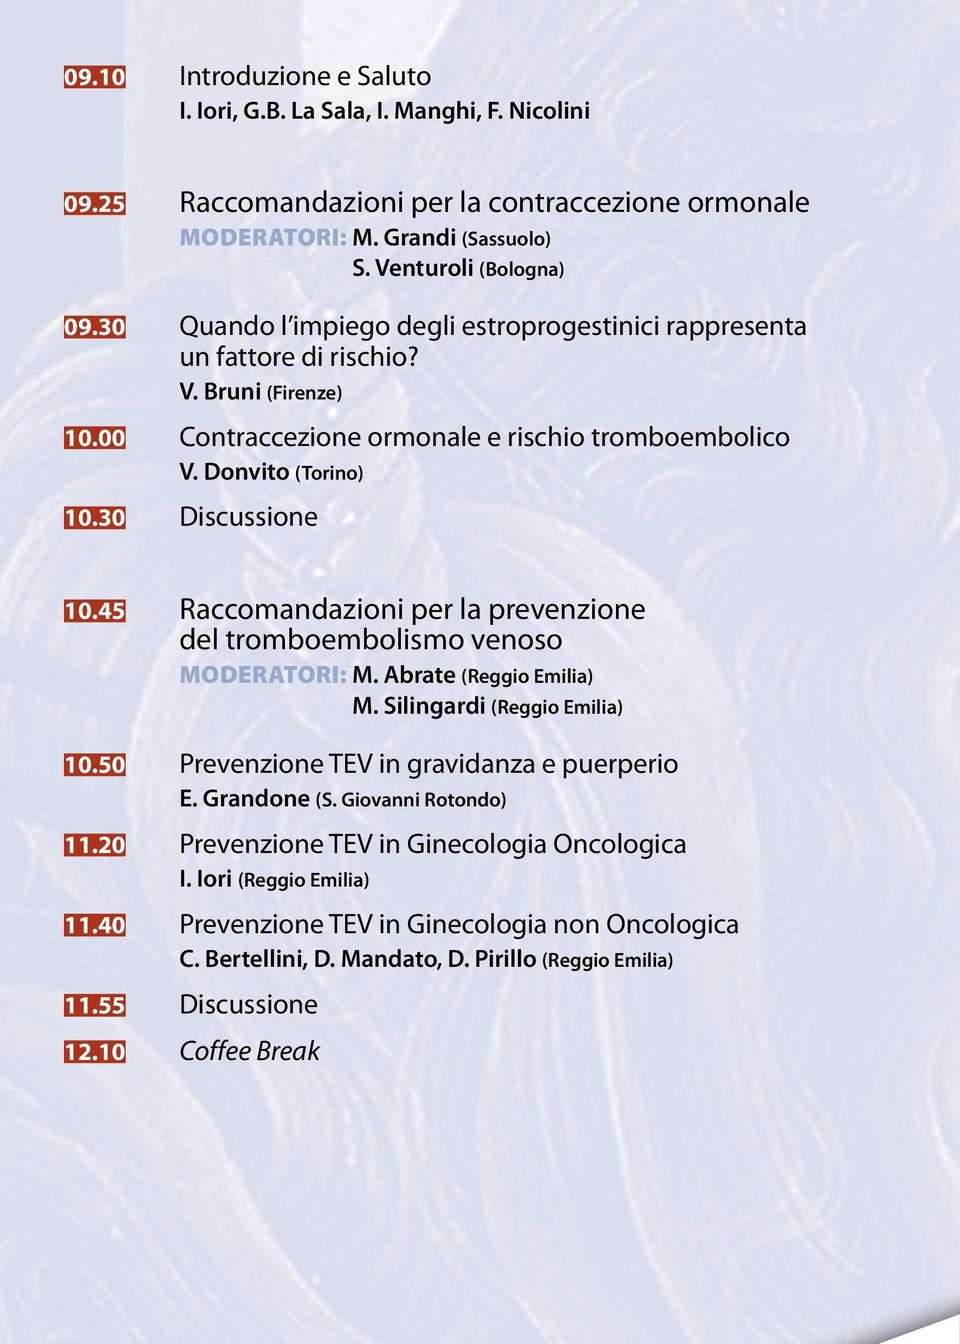 45 Raccomandazioni per la prevenzione del tromboembolismo venoso Moderatori: M. Abrate (Reggio Emilia) M. Silingardi (Reggio Emilia) 10.50 Prevenzione TEV in gravidanza e puerperio E. Grandone (S.